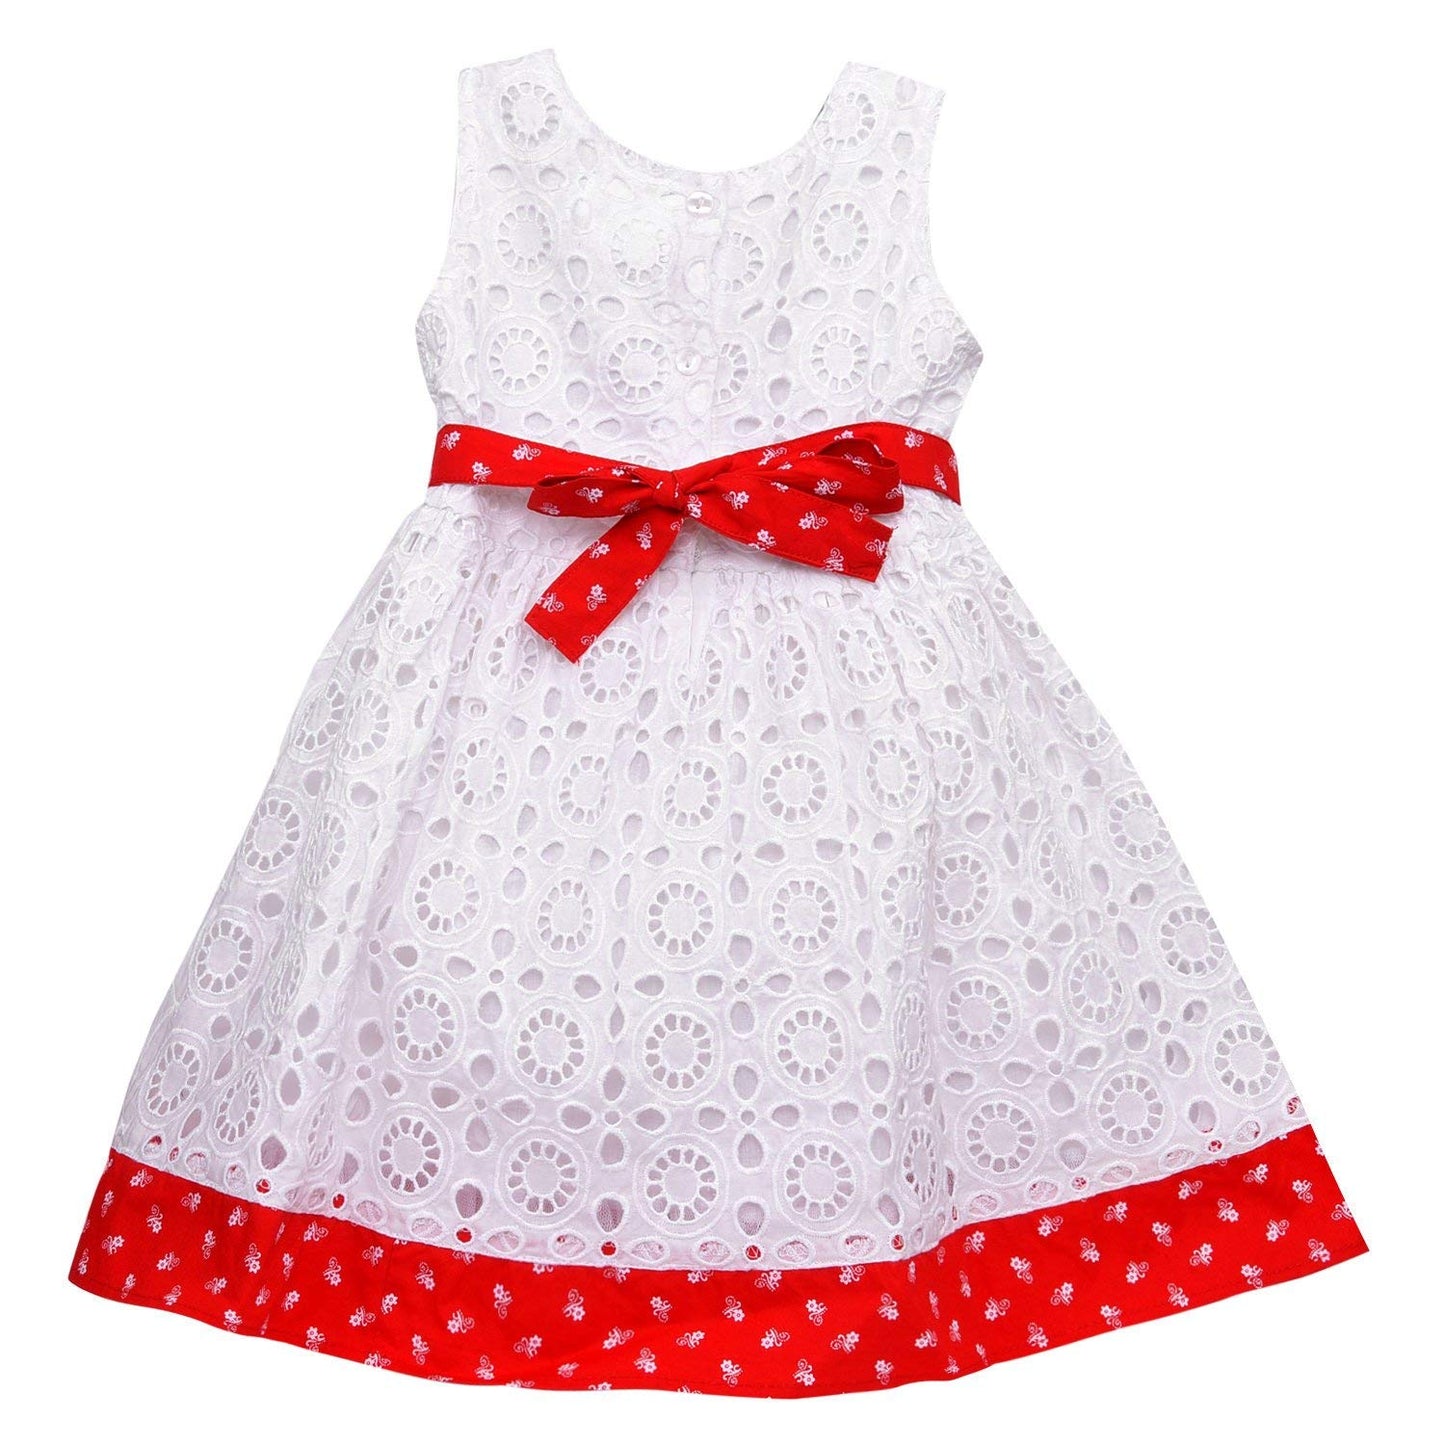 Baby Girls Party wear Cotton Frock Dress ctn263 - Wish Karo Cotton Wear - frocks Cotton Wear - baby dress